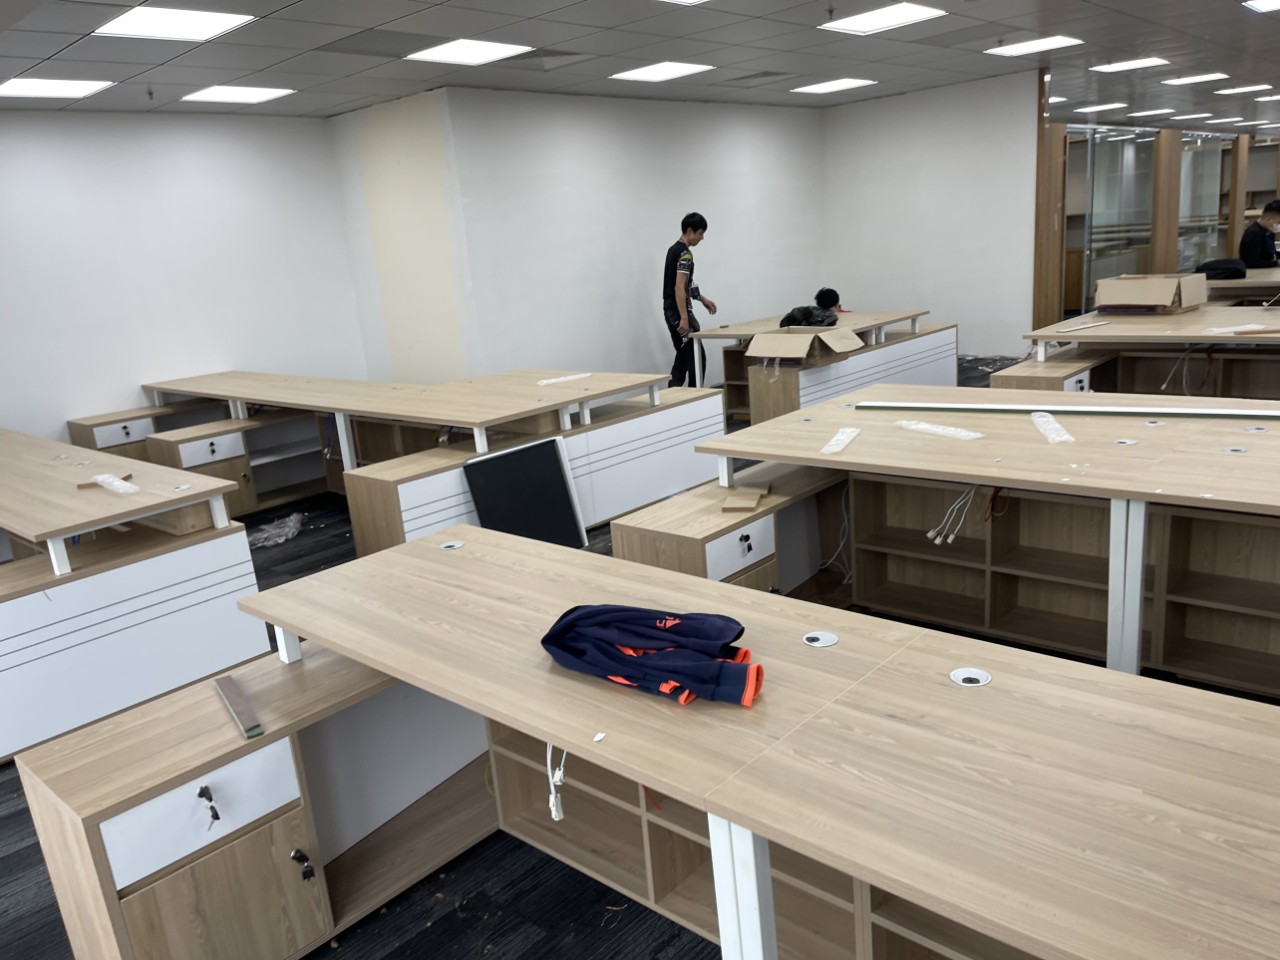 399+ Mẫu Bàn ghế văn phòng giá rẻ mẫu mới nhất hiện nay | Nội Thất Sơn Vũ